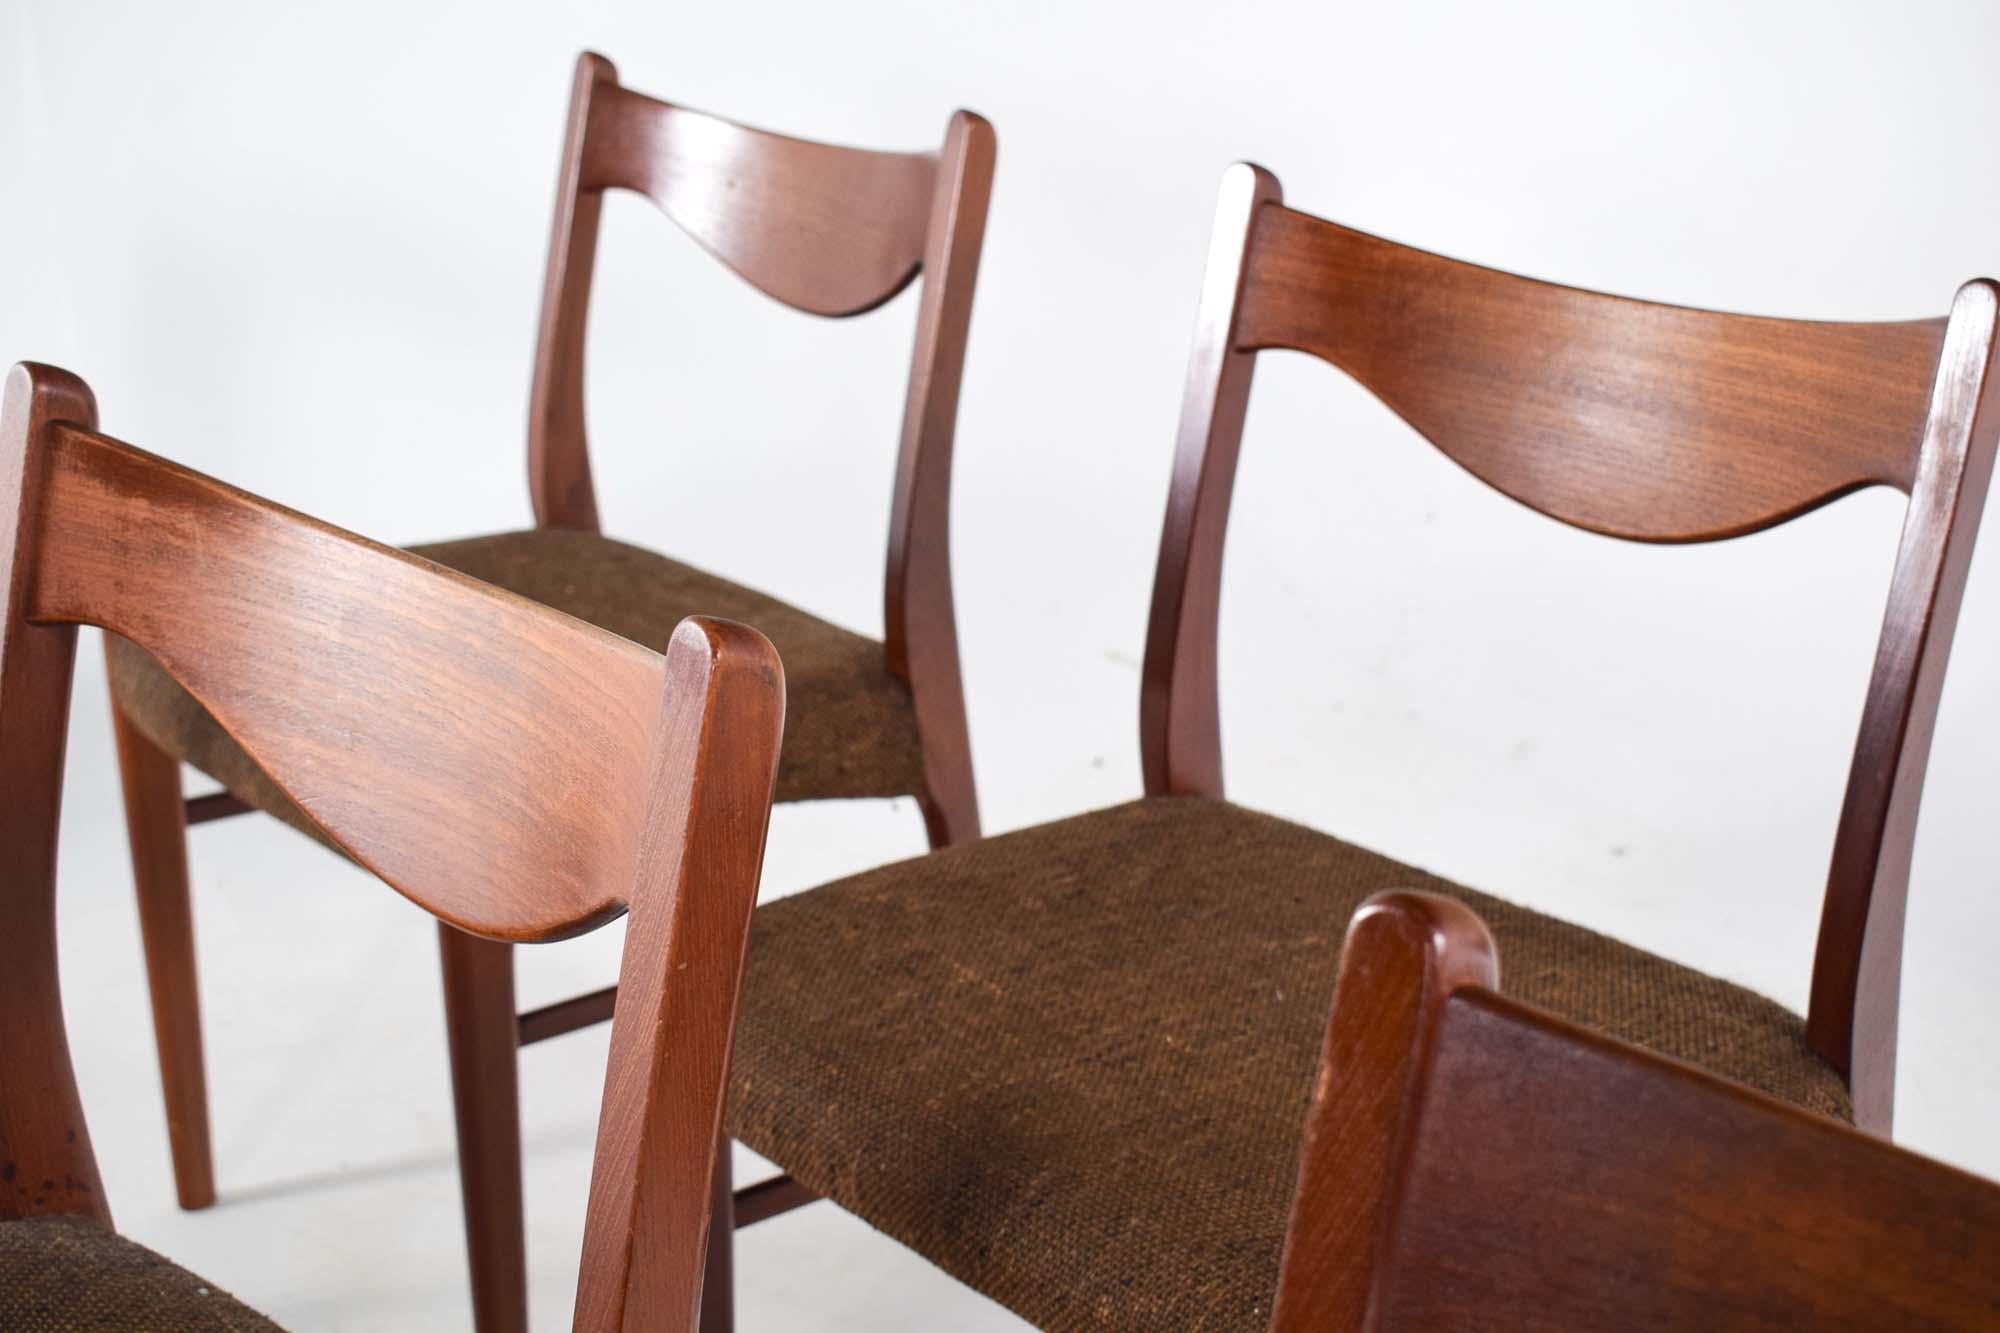 Dieses exquisite Set aus sechs Esszimmerstühlen ist ein Markenzeichen des skandinavischen Designs, gefertigt mit der eleganten Schlichtheit und Funktionalität, für die dänische Möbel bekannt sind. Die von Arne Wahl Iversen entworfenen und von der